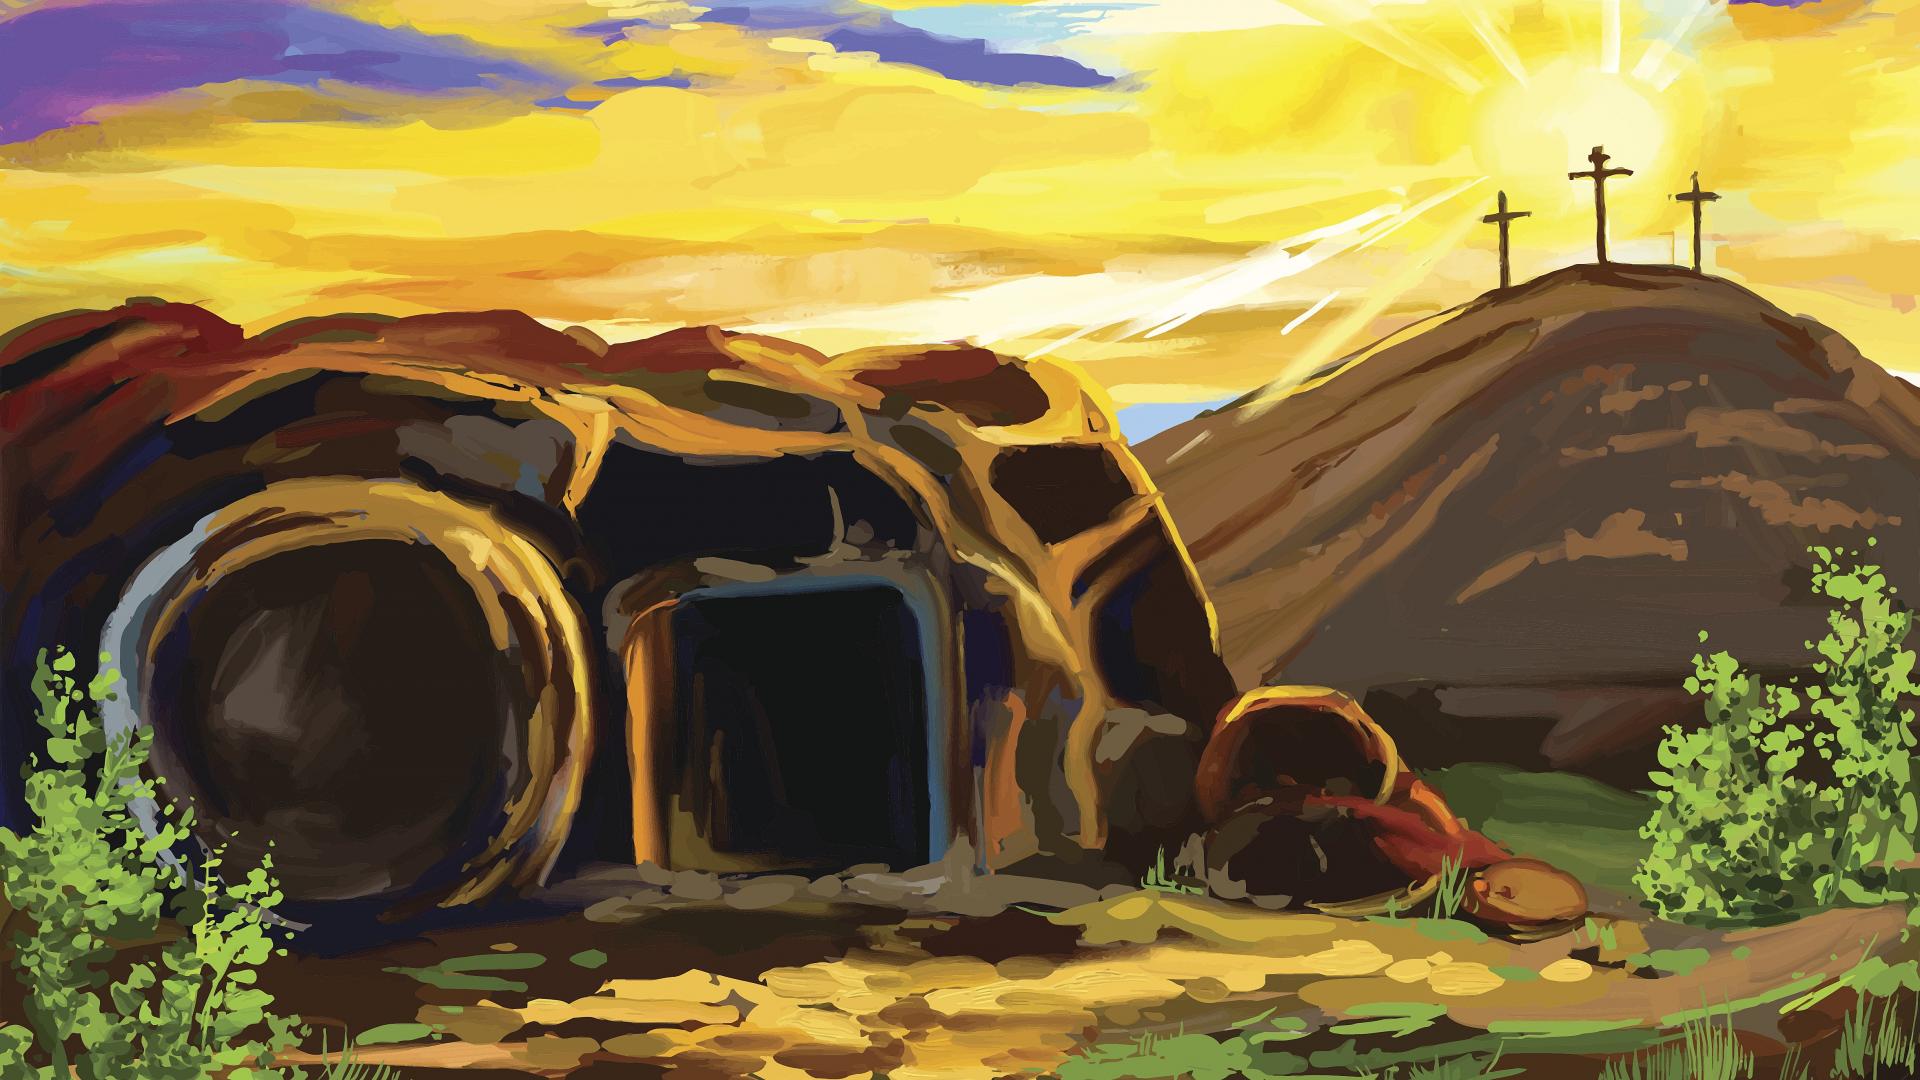 Ein gemaltes Bild von einer Höhle und einem weggewälzten Stein, im Hintergrund stehen drei Kreuze auf einem Hügel